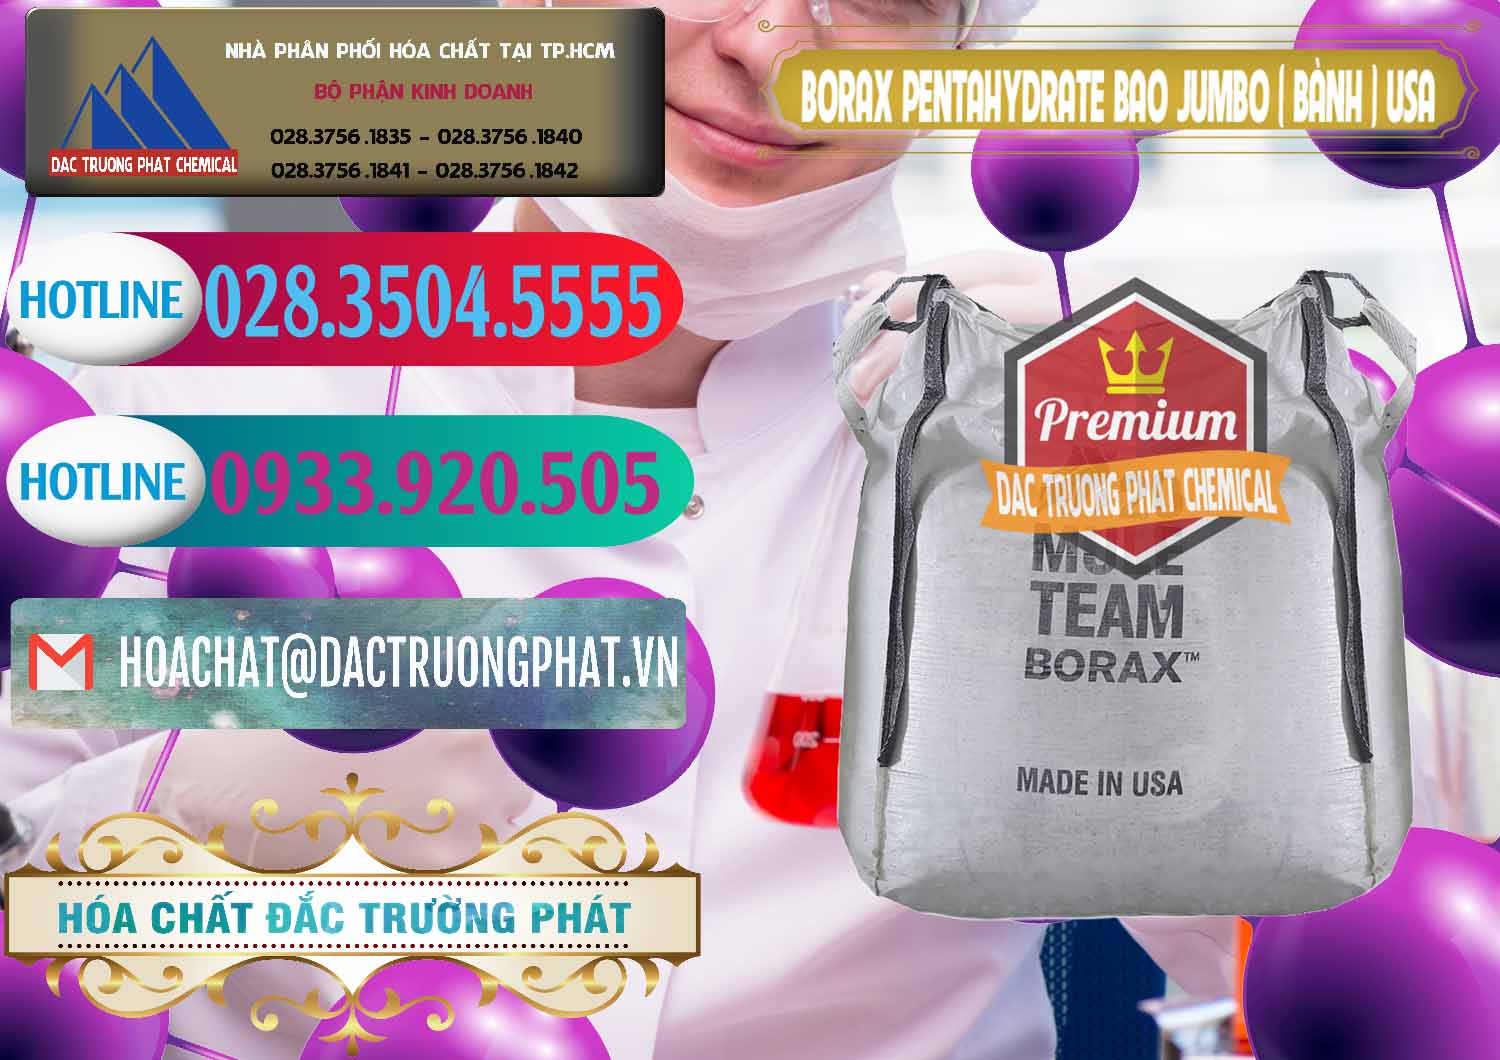 Kinh doanh và bán Borax Pentahydrate Bao Jumbo ( Bành ) Mule 20 Team Mỹ Usa - 0278 - Công ty kinh doanh & phân phối hóa chất tại TP.HCM - truongphat.vn